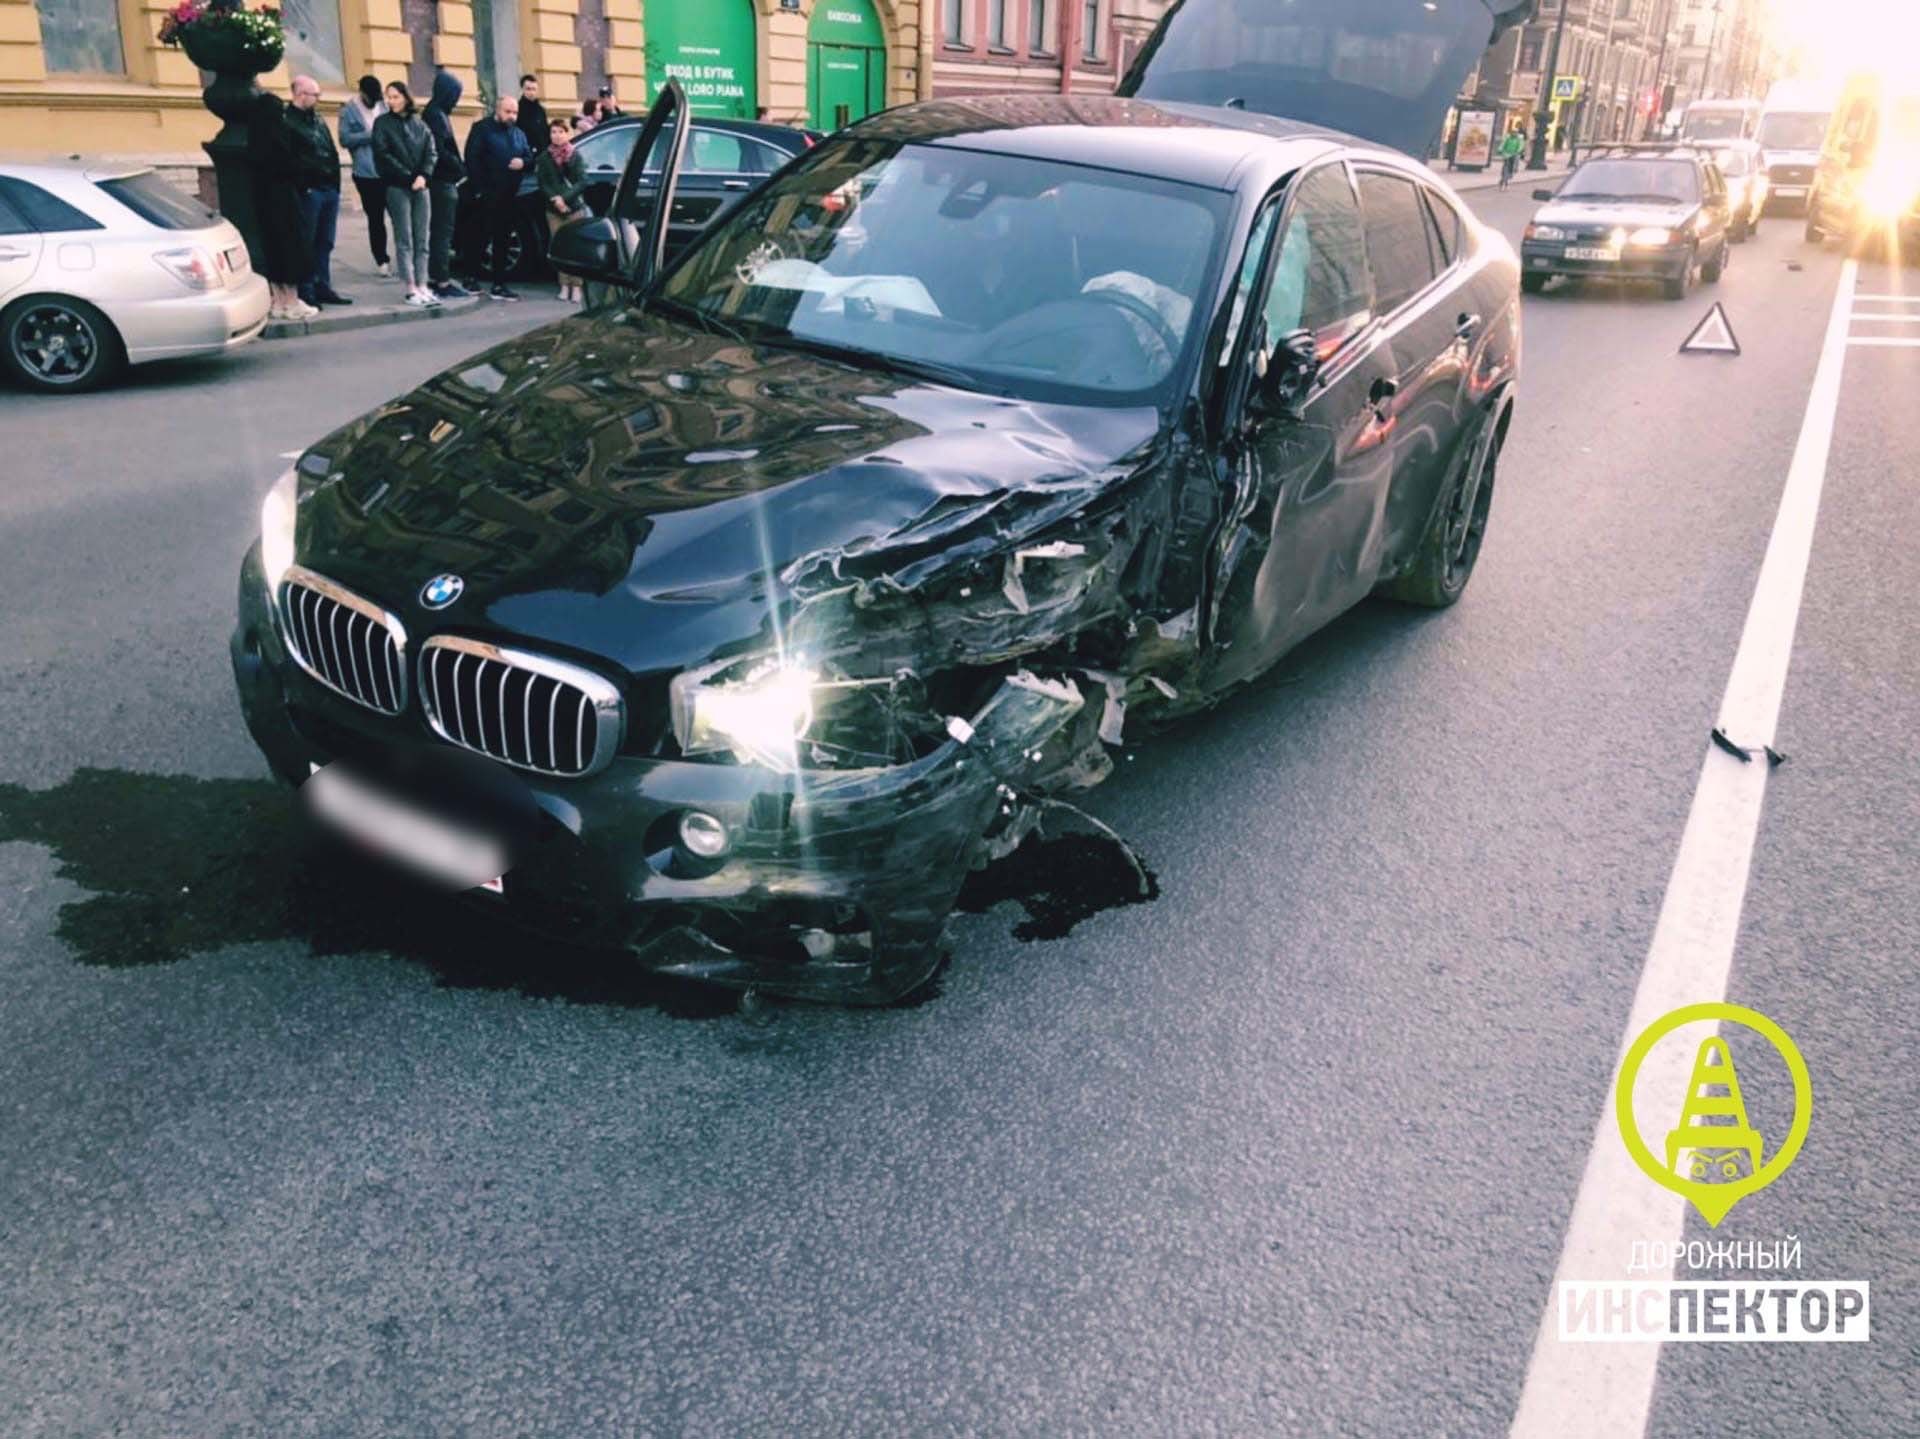 В центре Петербурга автомобиль скорой попал в аварию. Пострадали медики